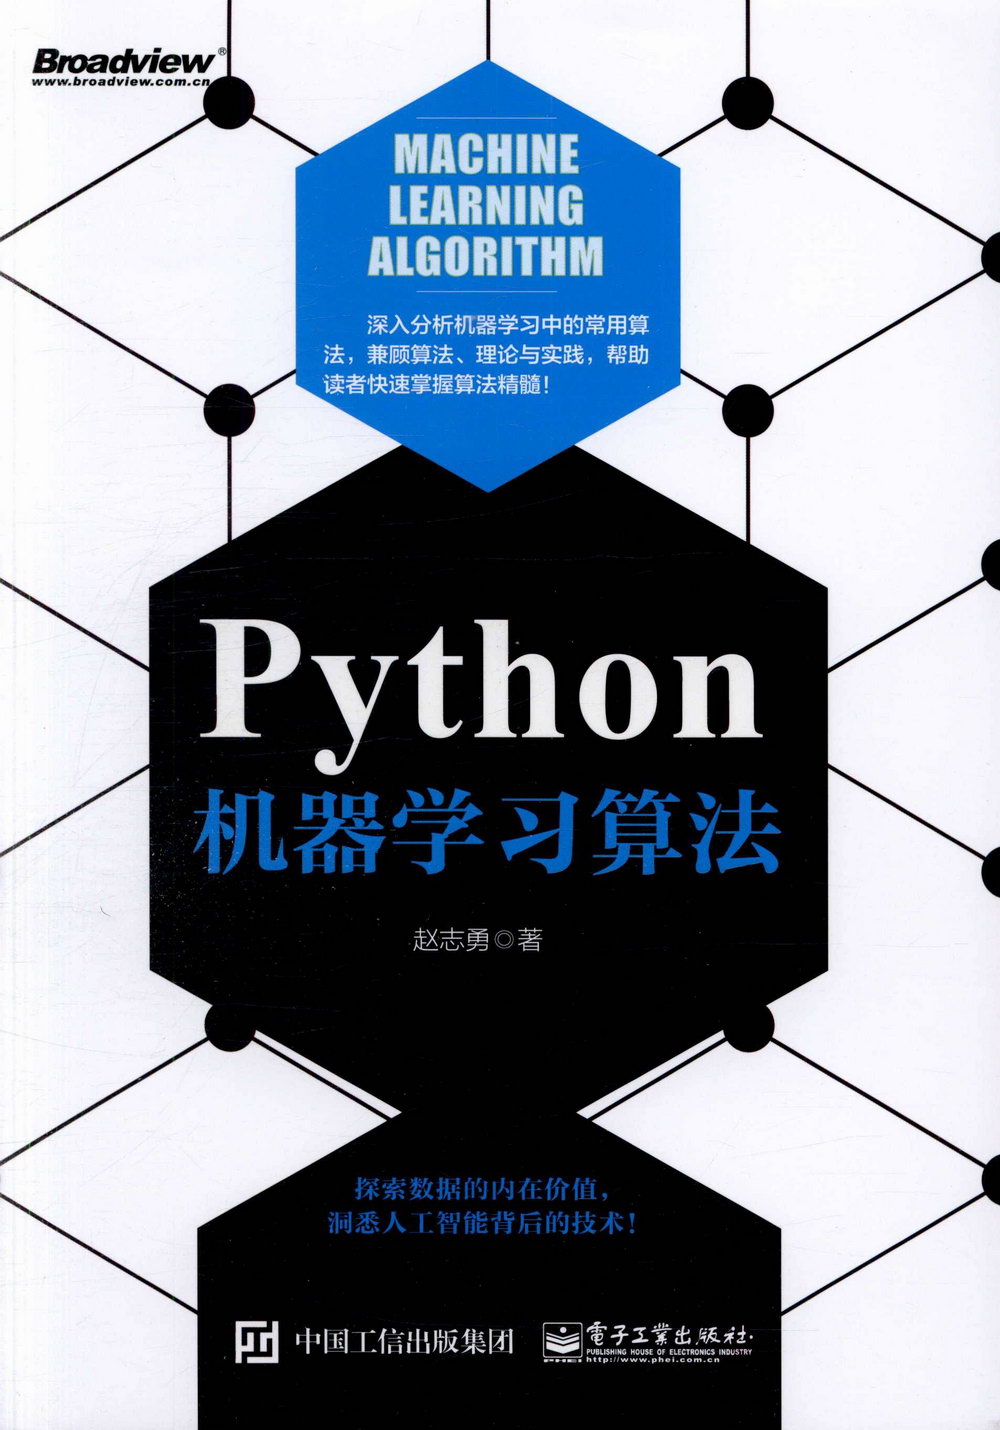 Python機器學習算法